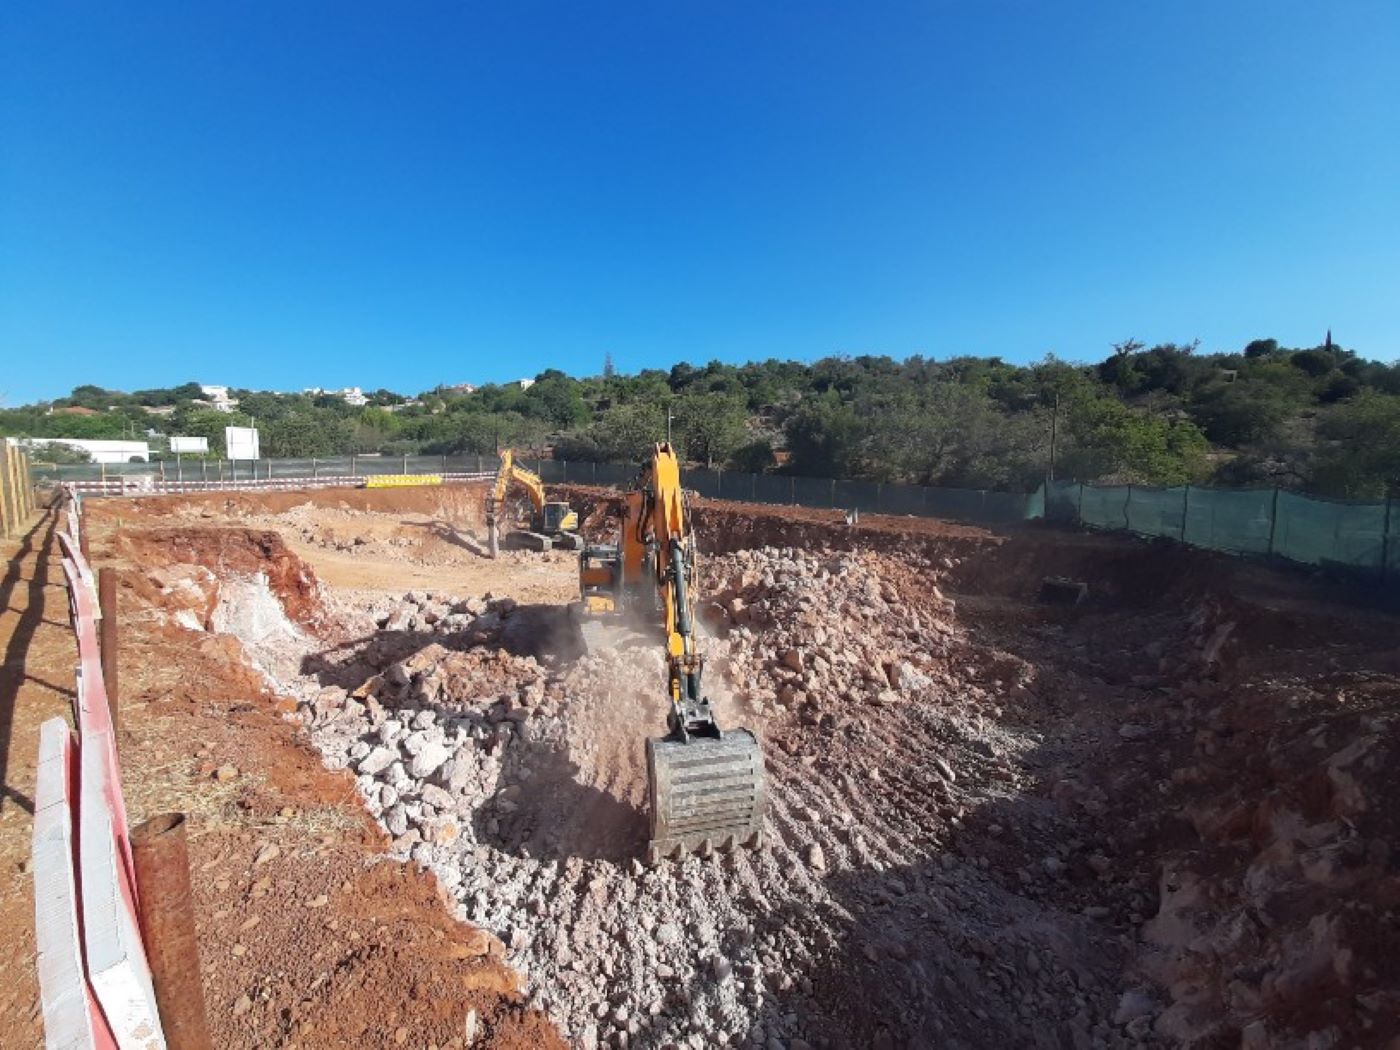 Riportico fiscaliza e assegura acompanhamento arqueológico em empreitada de reforço do abastecimento de água em Loulé